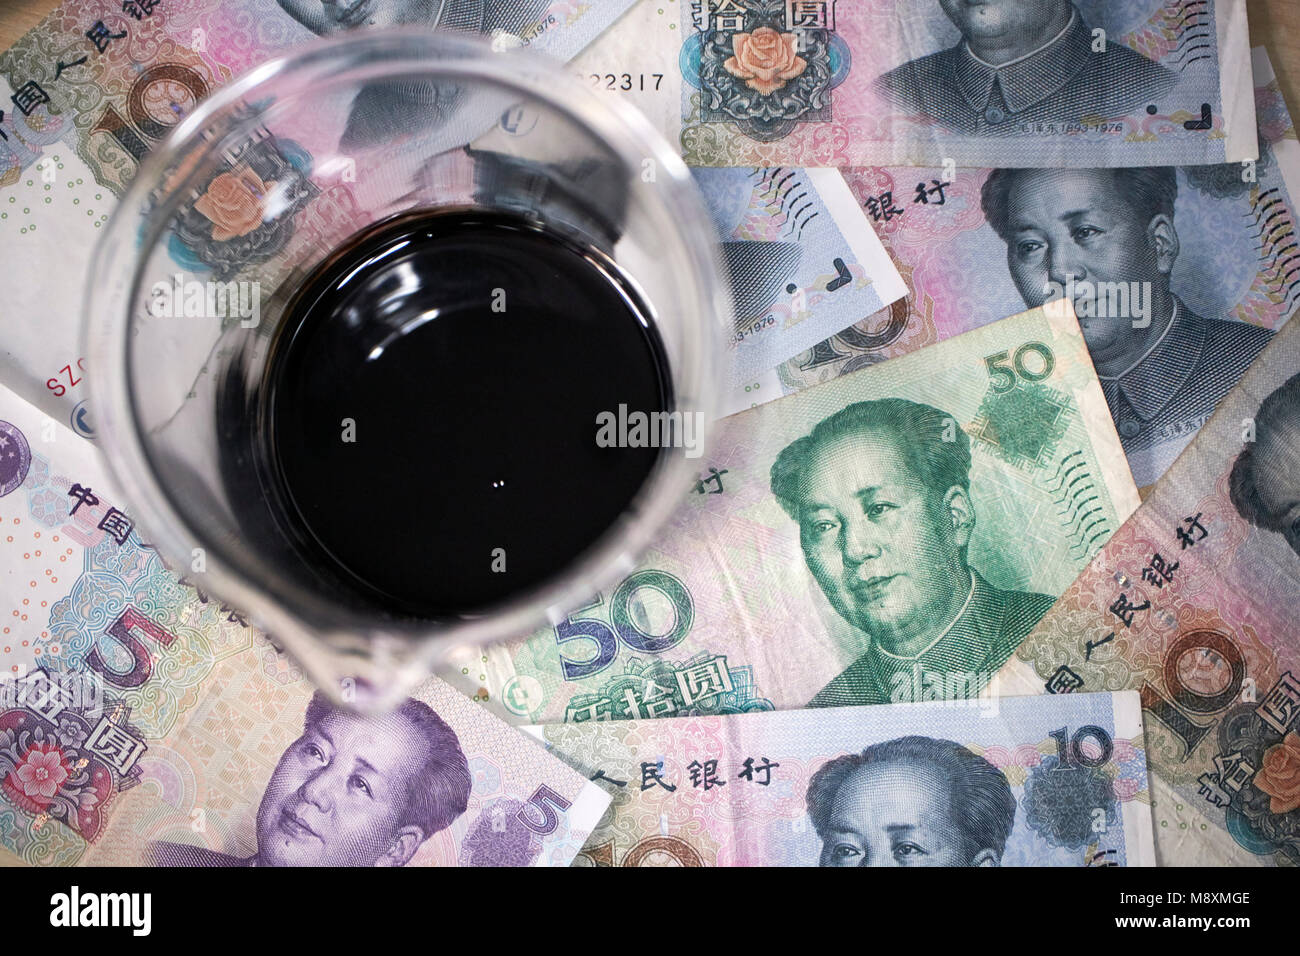 Pot de pétrole brut avec Chinese yuan renminbi currency trading concept Banque D'Images